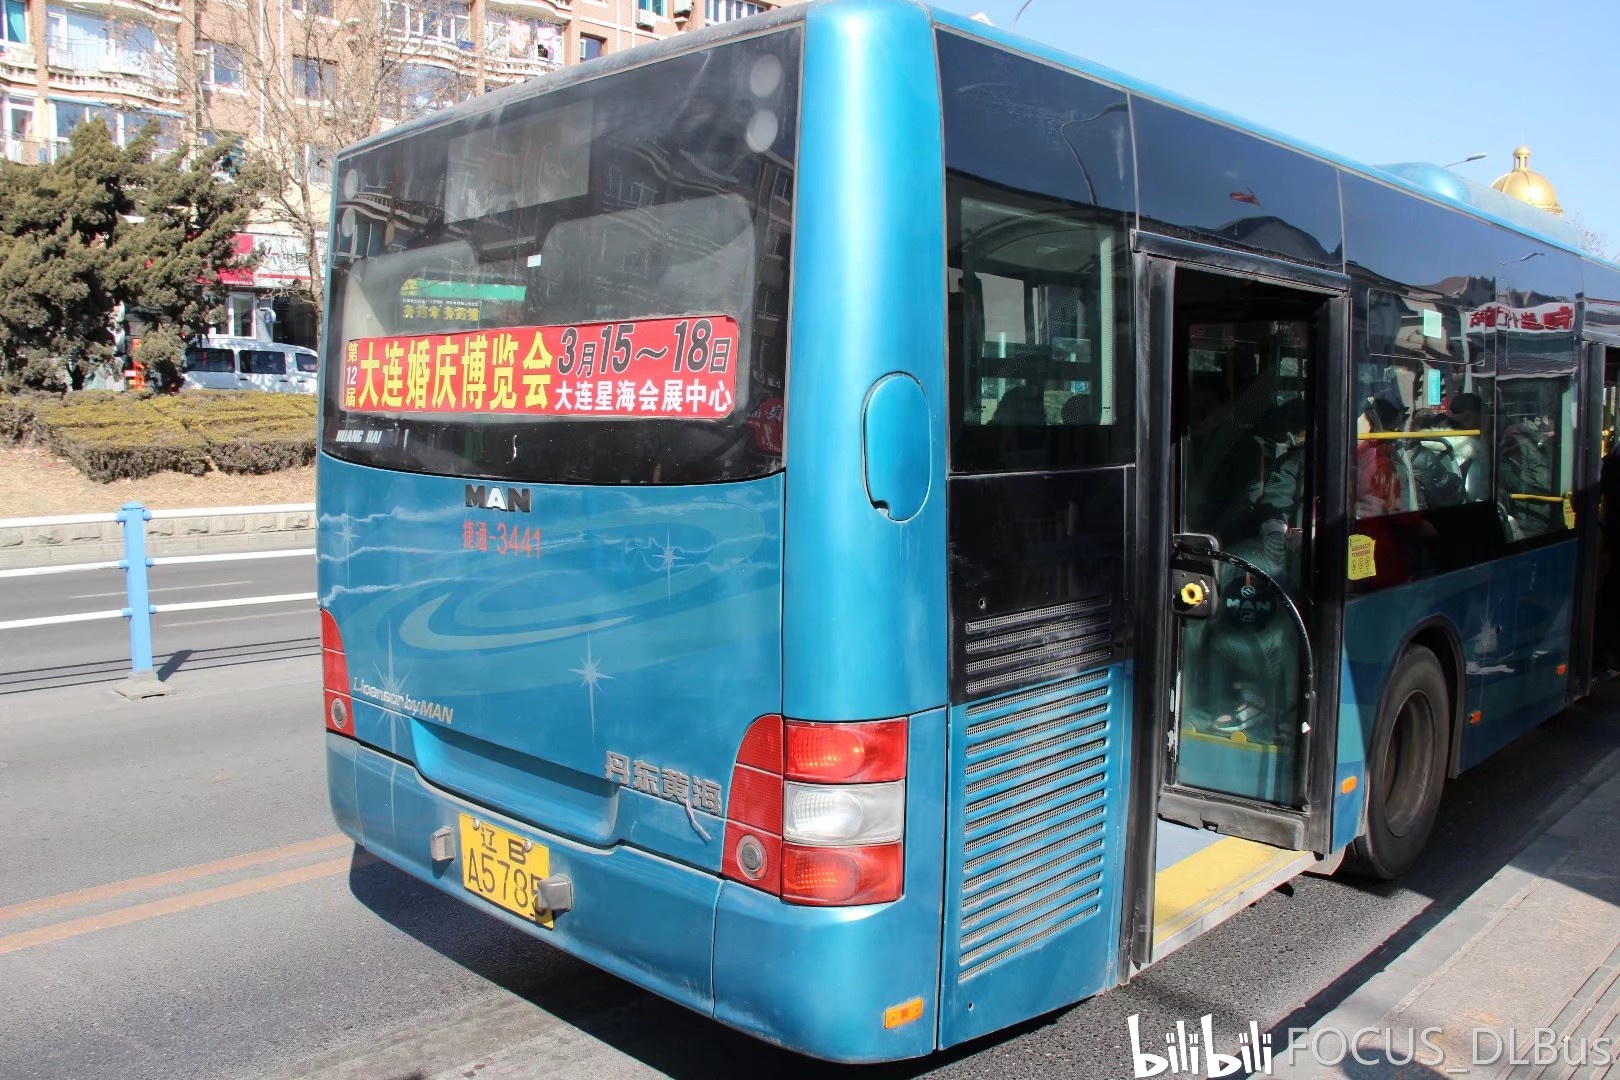 丹东黄海man dd6127s01/dd6187s01 man为快速公交开线配车,除3502外